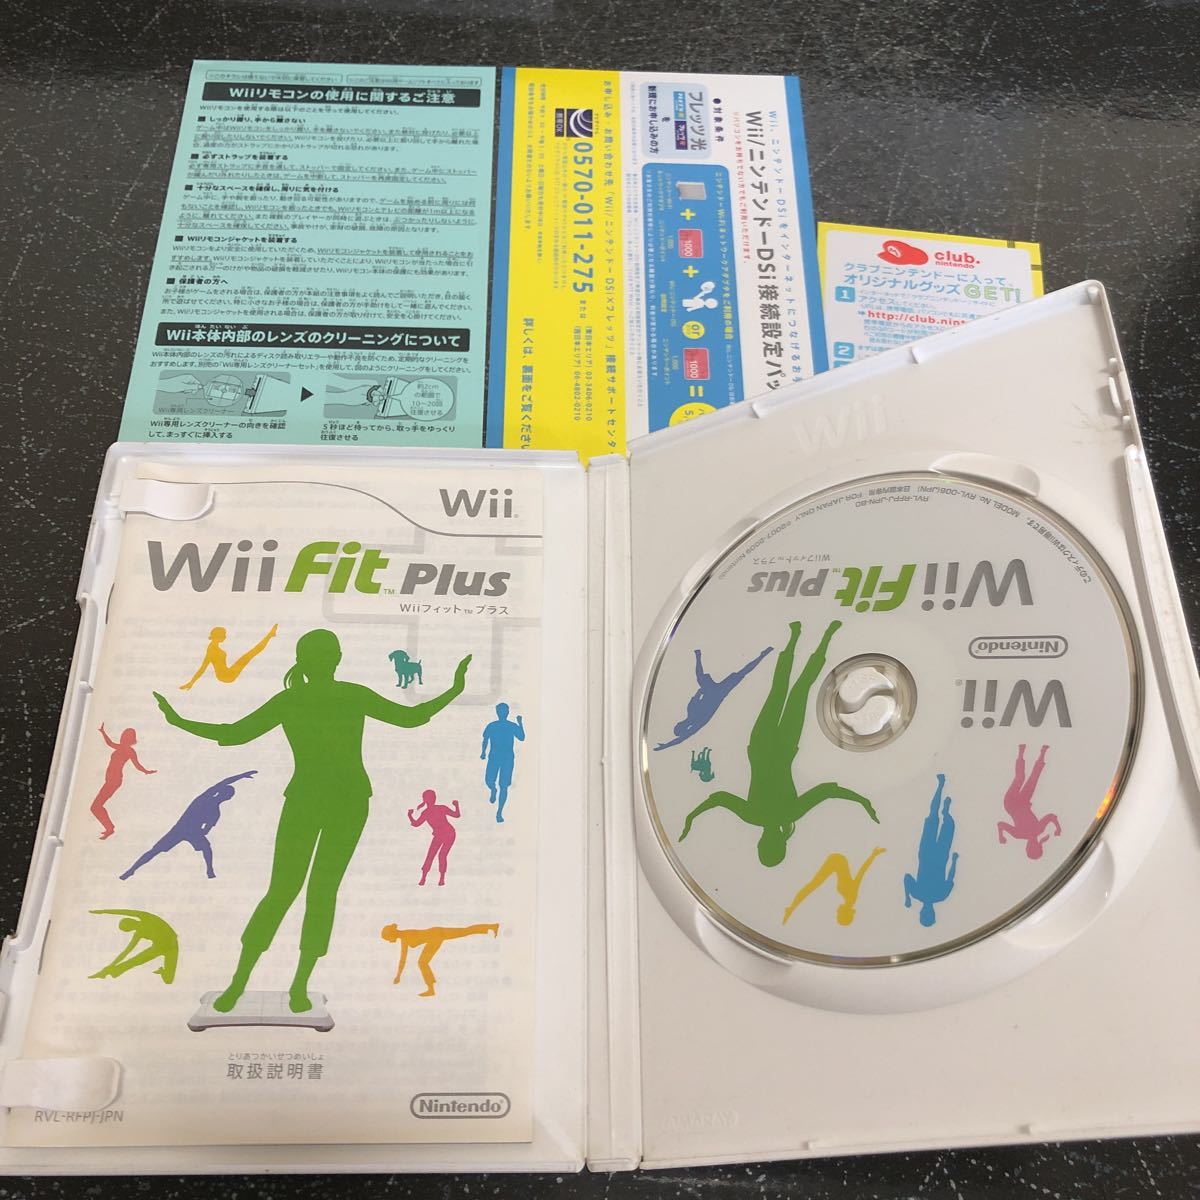 【ジャンク】Wii Fit Wii Fit Plus Wii sports Wii Sports Resort 4つまとめ売り Wii 【3507】